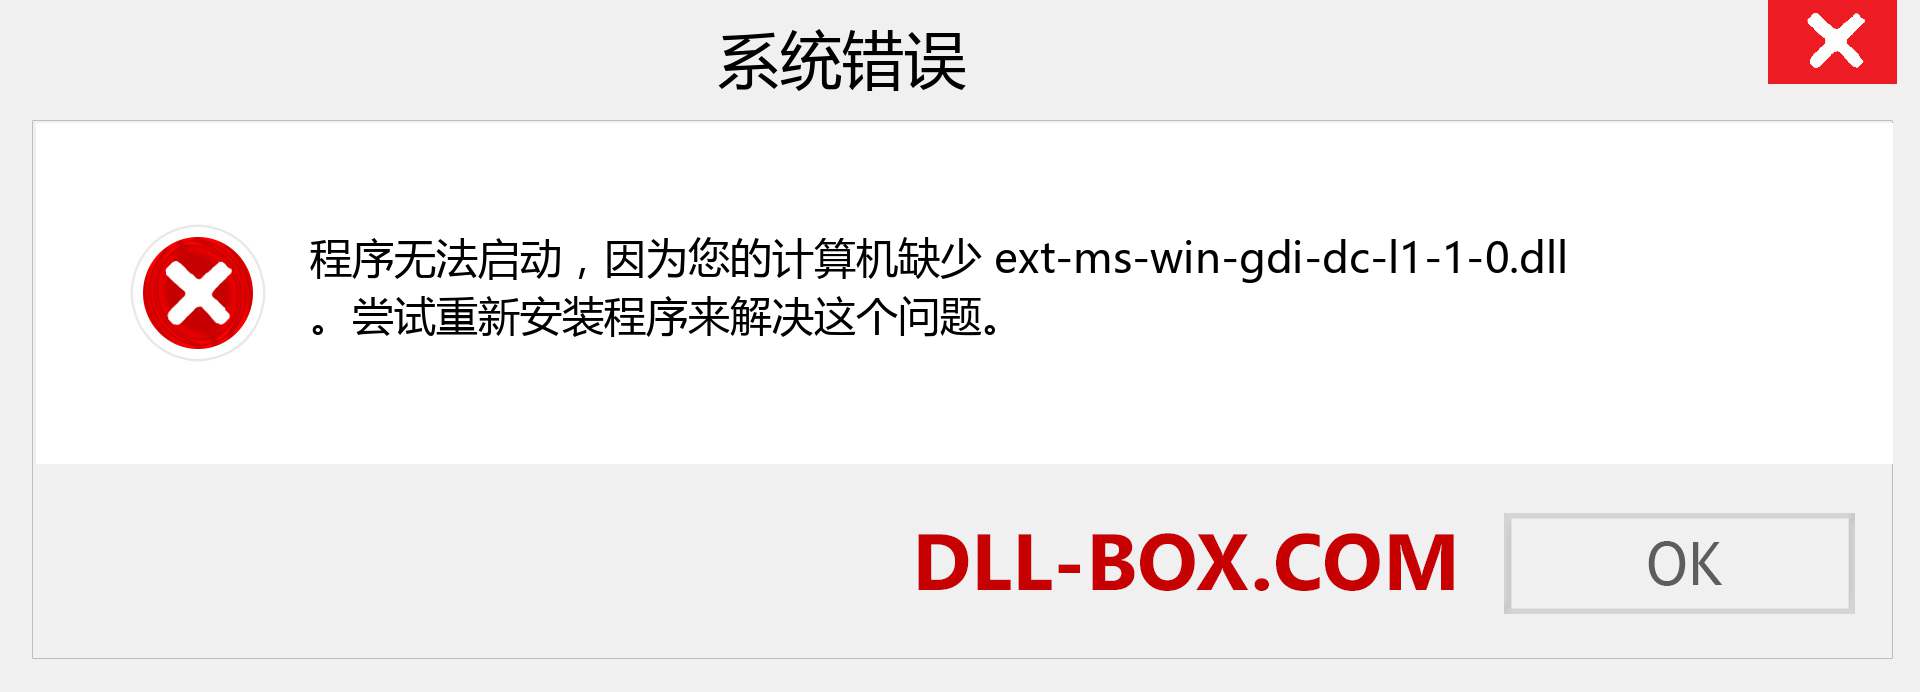 ext-ms-win-gdi-dc-l1-1-0.dll 文件丢失？。 适用于 Windows 7、8、10 的下载 - 修复 Windows、照片、图像上的 ext-ms-win-gdi-dc-l1-1-0 dll 丢失错误